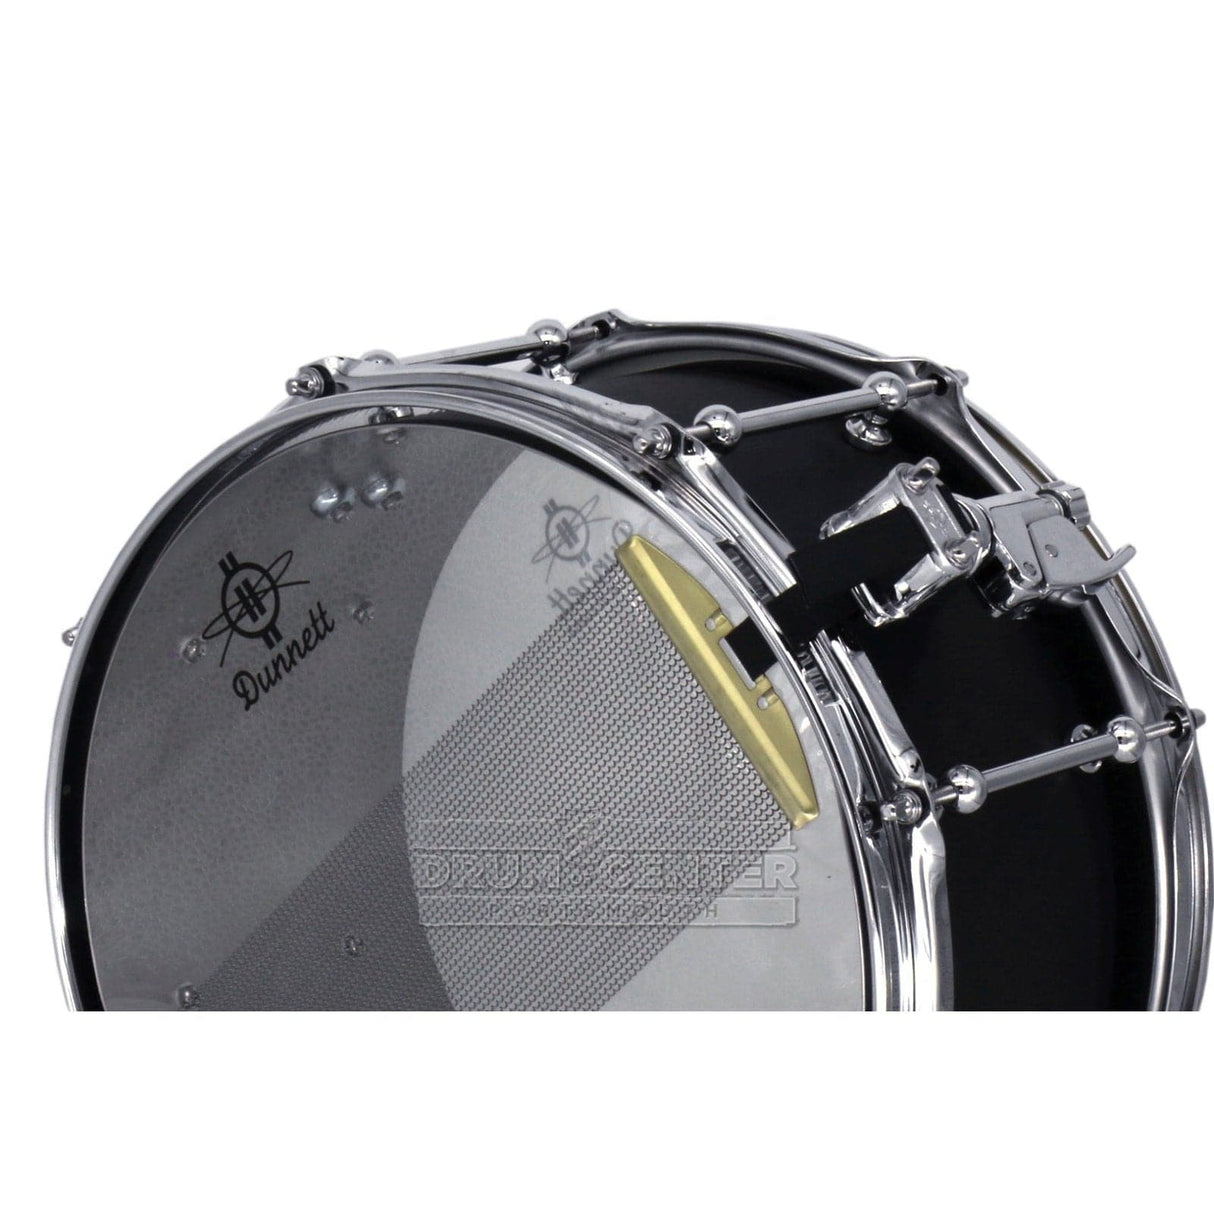 Dunnett Classic Titanium Snare Drum 13x6.5 Brushed Black